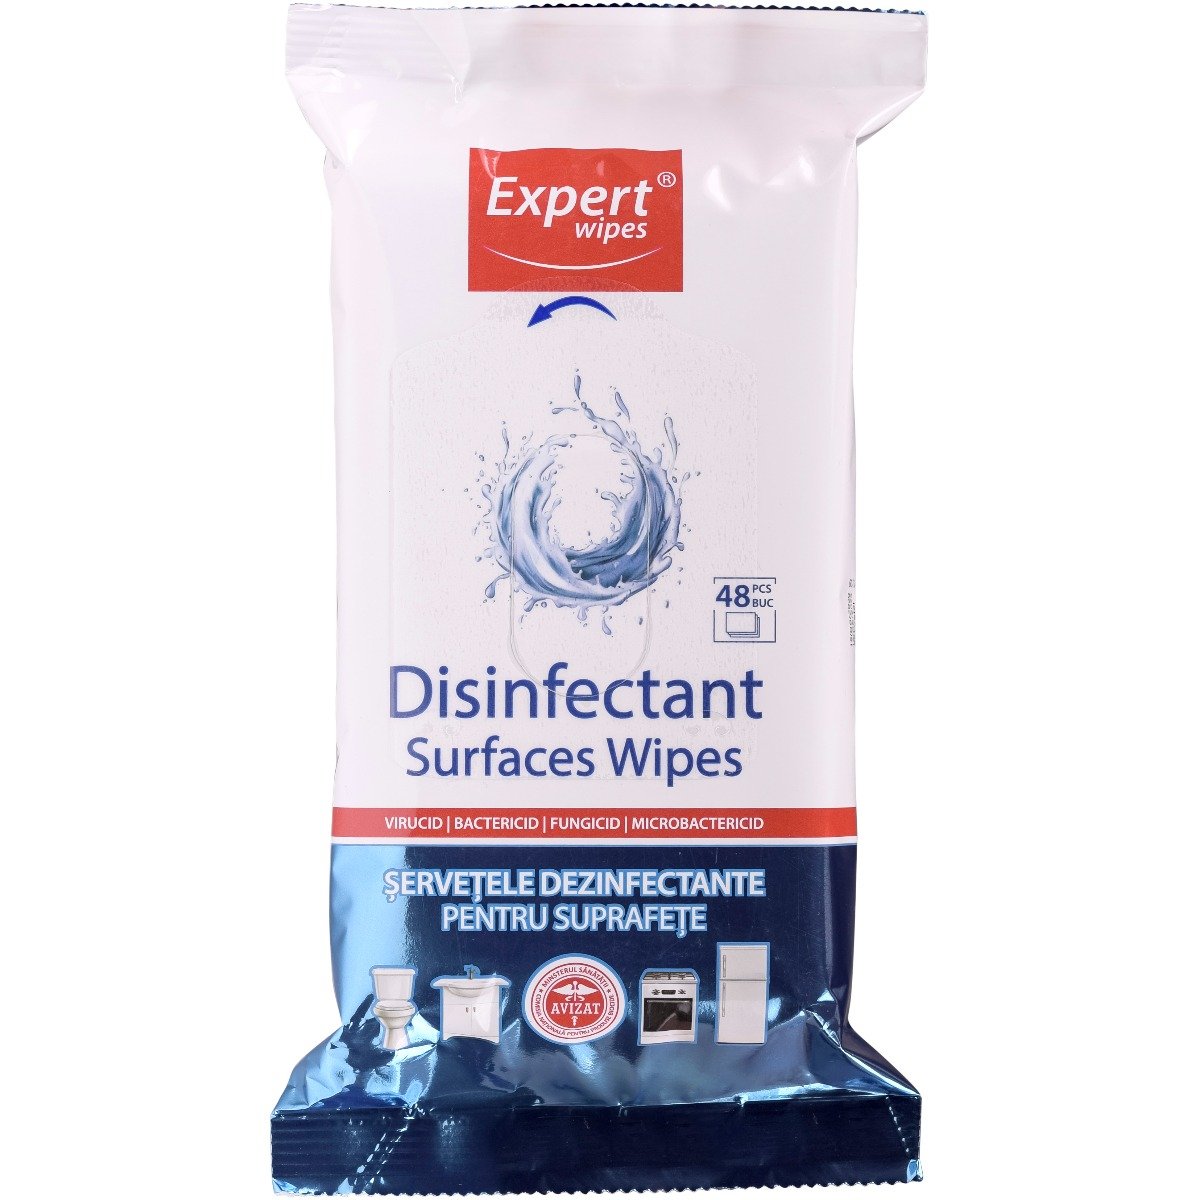 Servetele dezinfectante pentru suprafete Expert Wipes, 48 buc buc